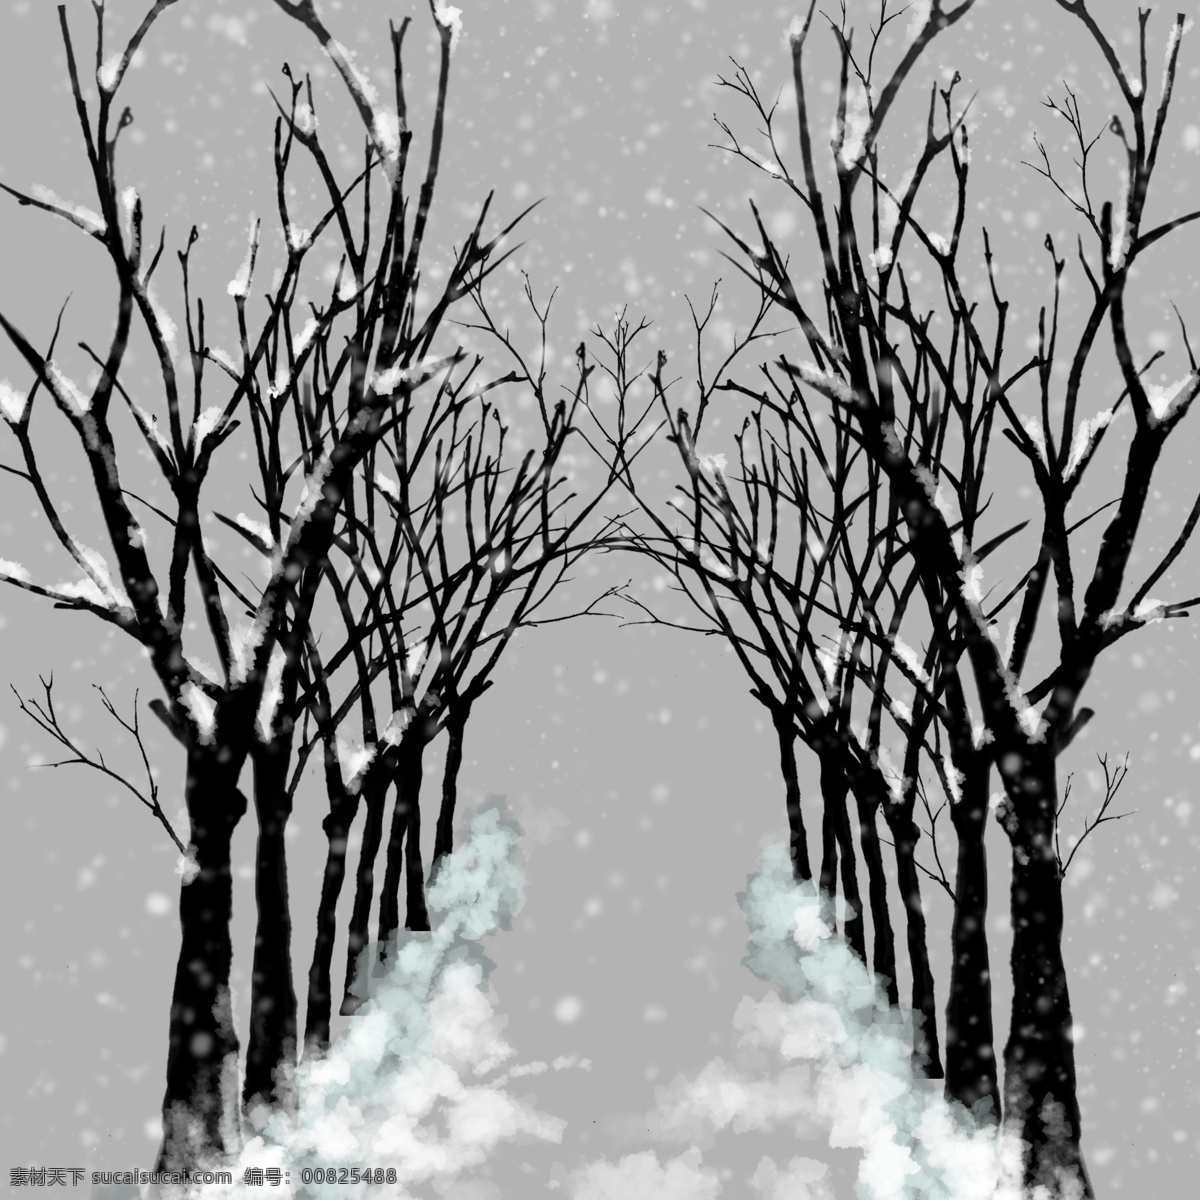 冬季 积雪 暗色 树林 寒冷 手绘 免 抠 积雪树林 暗色树枝 免抠图 写实 唯美 雪花飘落 排列树 地面积雪